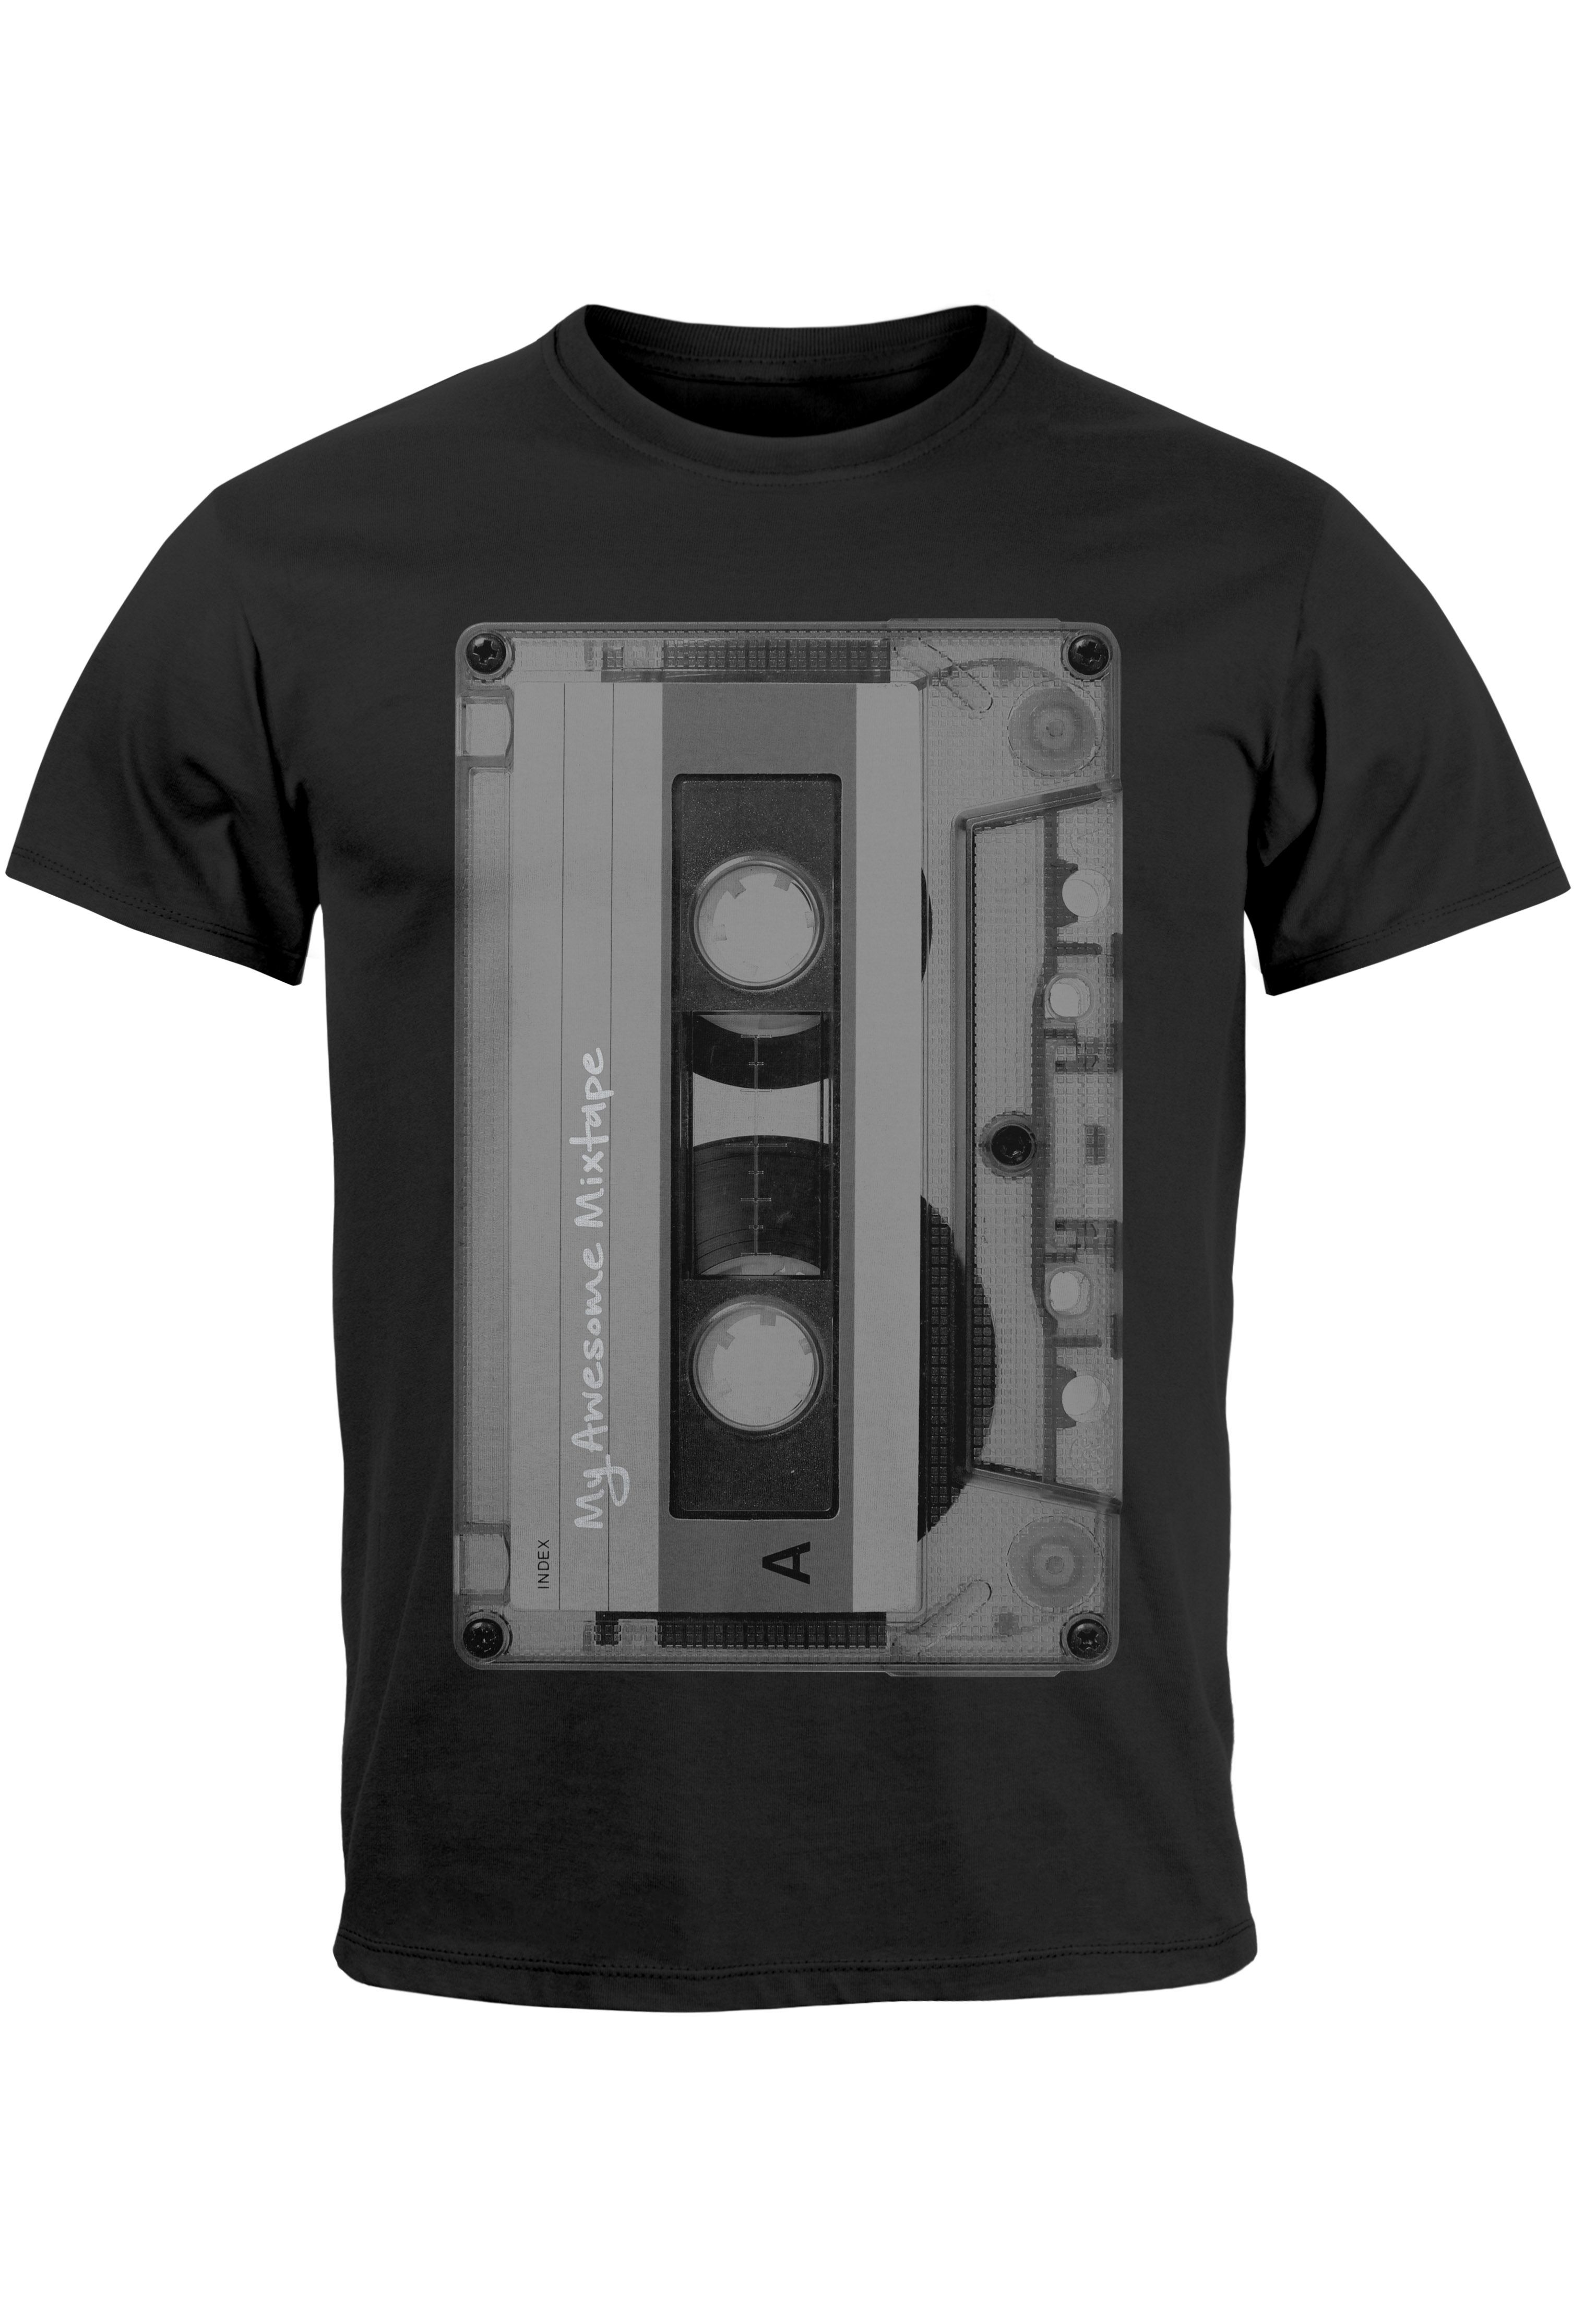 Herren T-Shirt Retro Motiv 80er Jahre Mixtape Kassette Oldschool Fashion Streetstyle Neverless® 